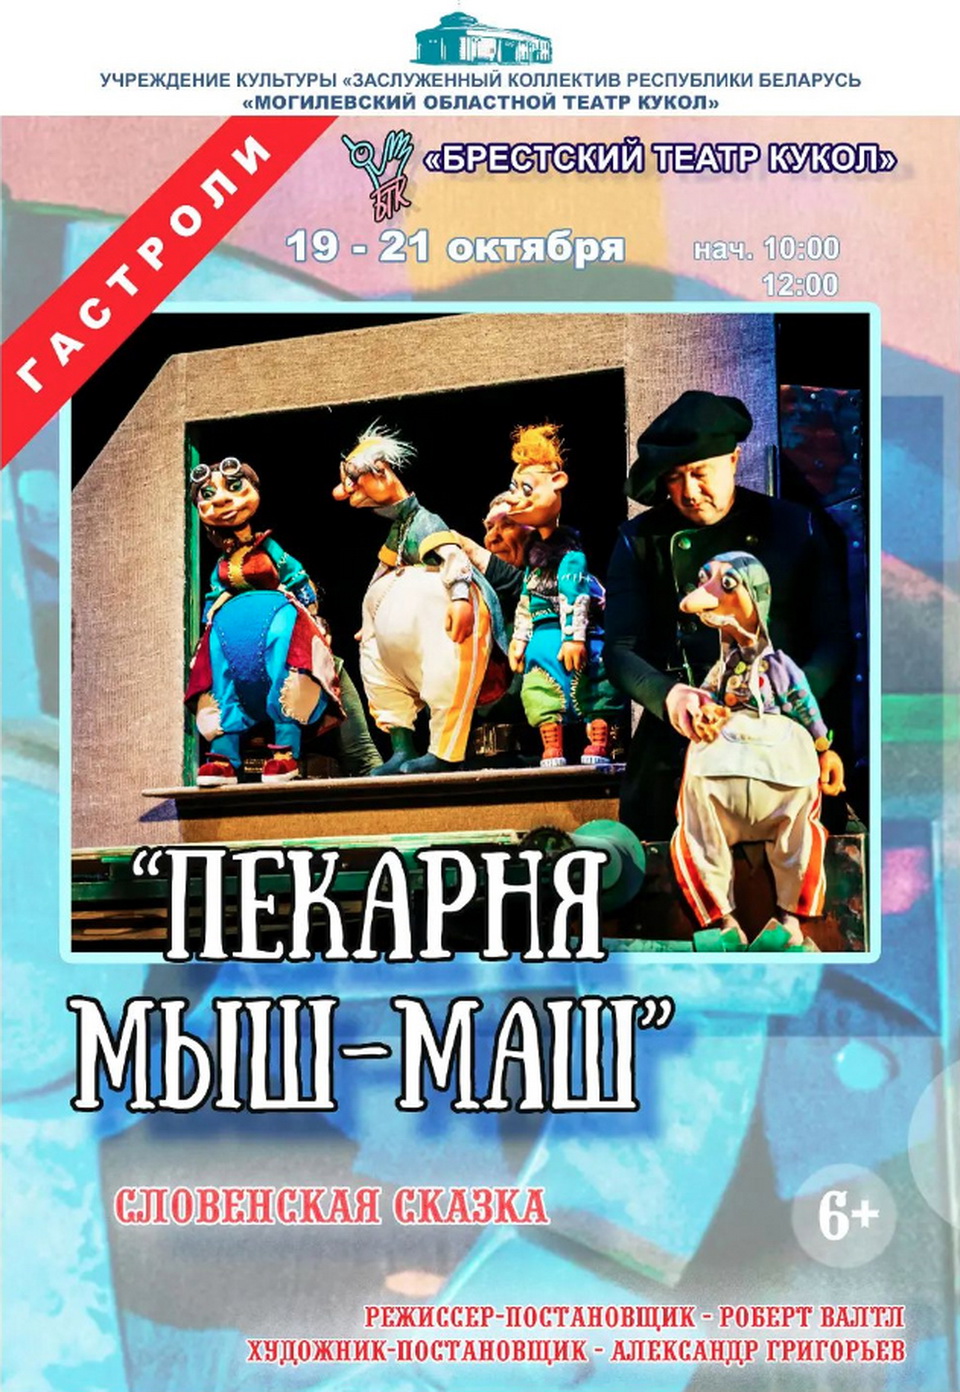 Брестский театр кукол представит в Могилеве спектакль «Пекарня Мыш-Маш»